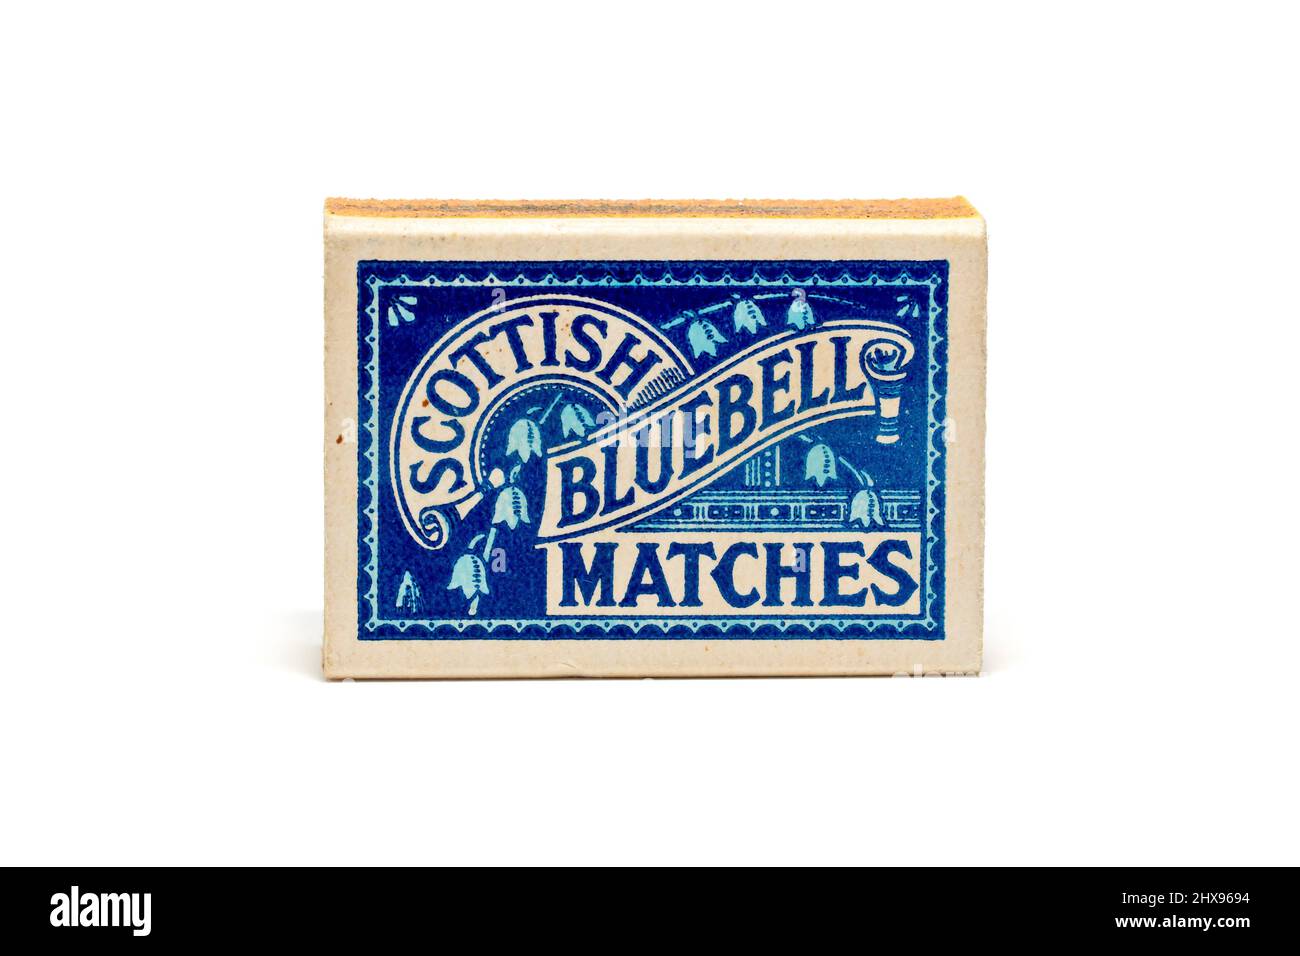 Primo piano di una vecchia scatola di cartone, brandizzata come Scottish Bluebell Matches, prodotta da Bryant e May, isolata su sfondo bianco. Foto Stock